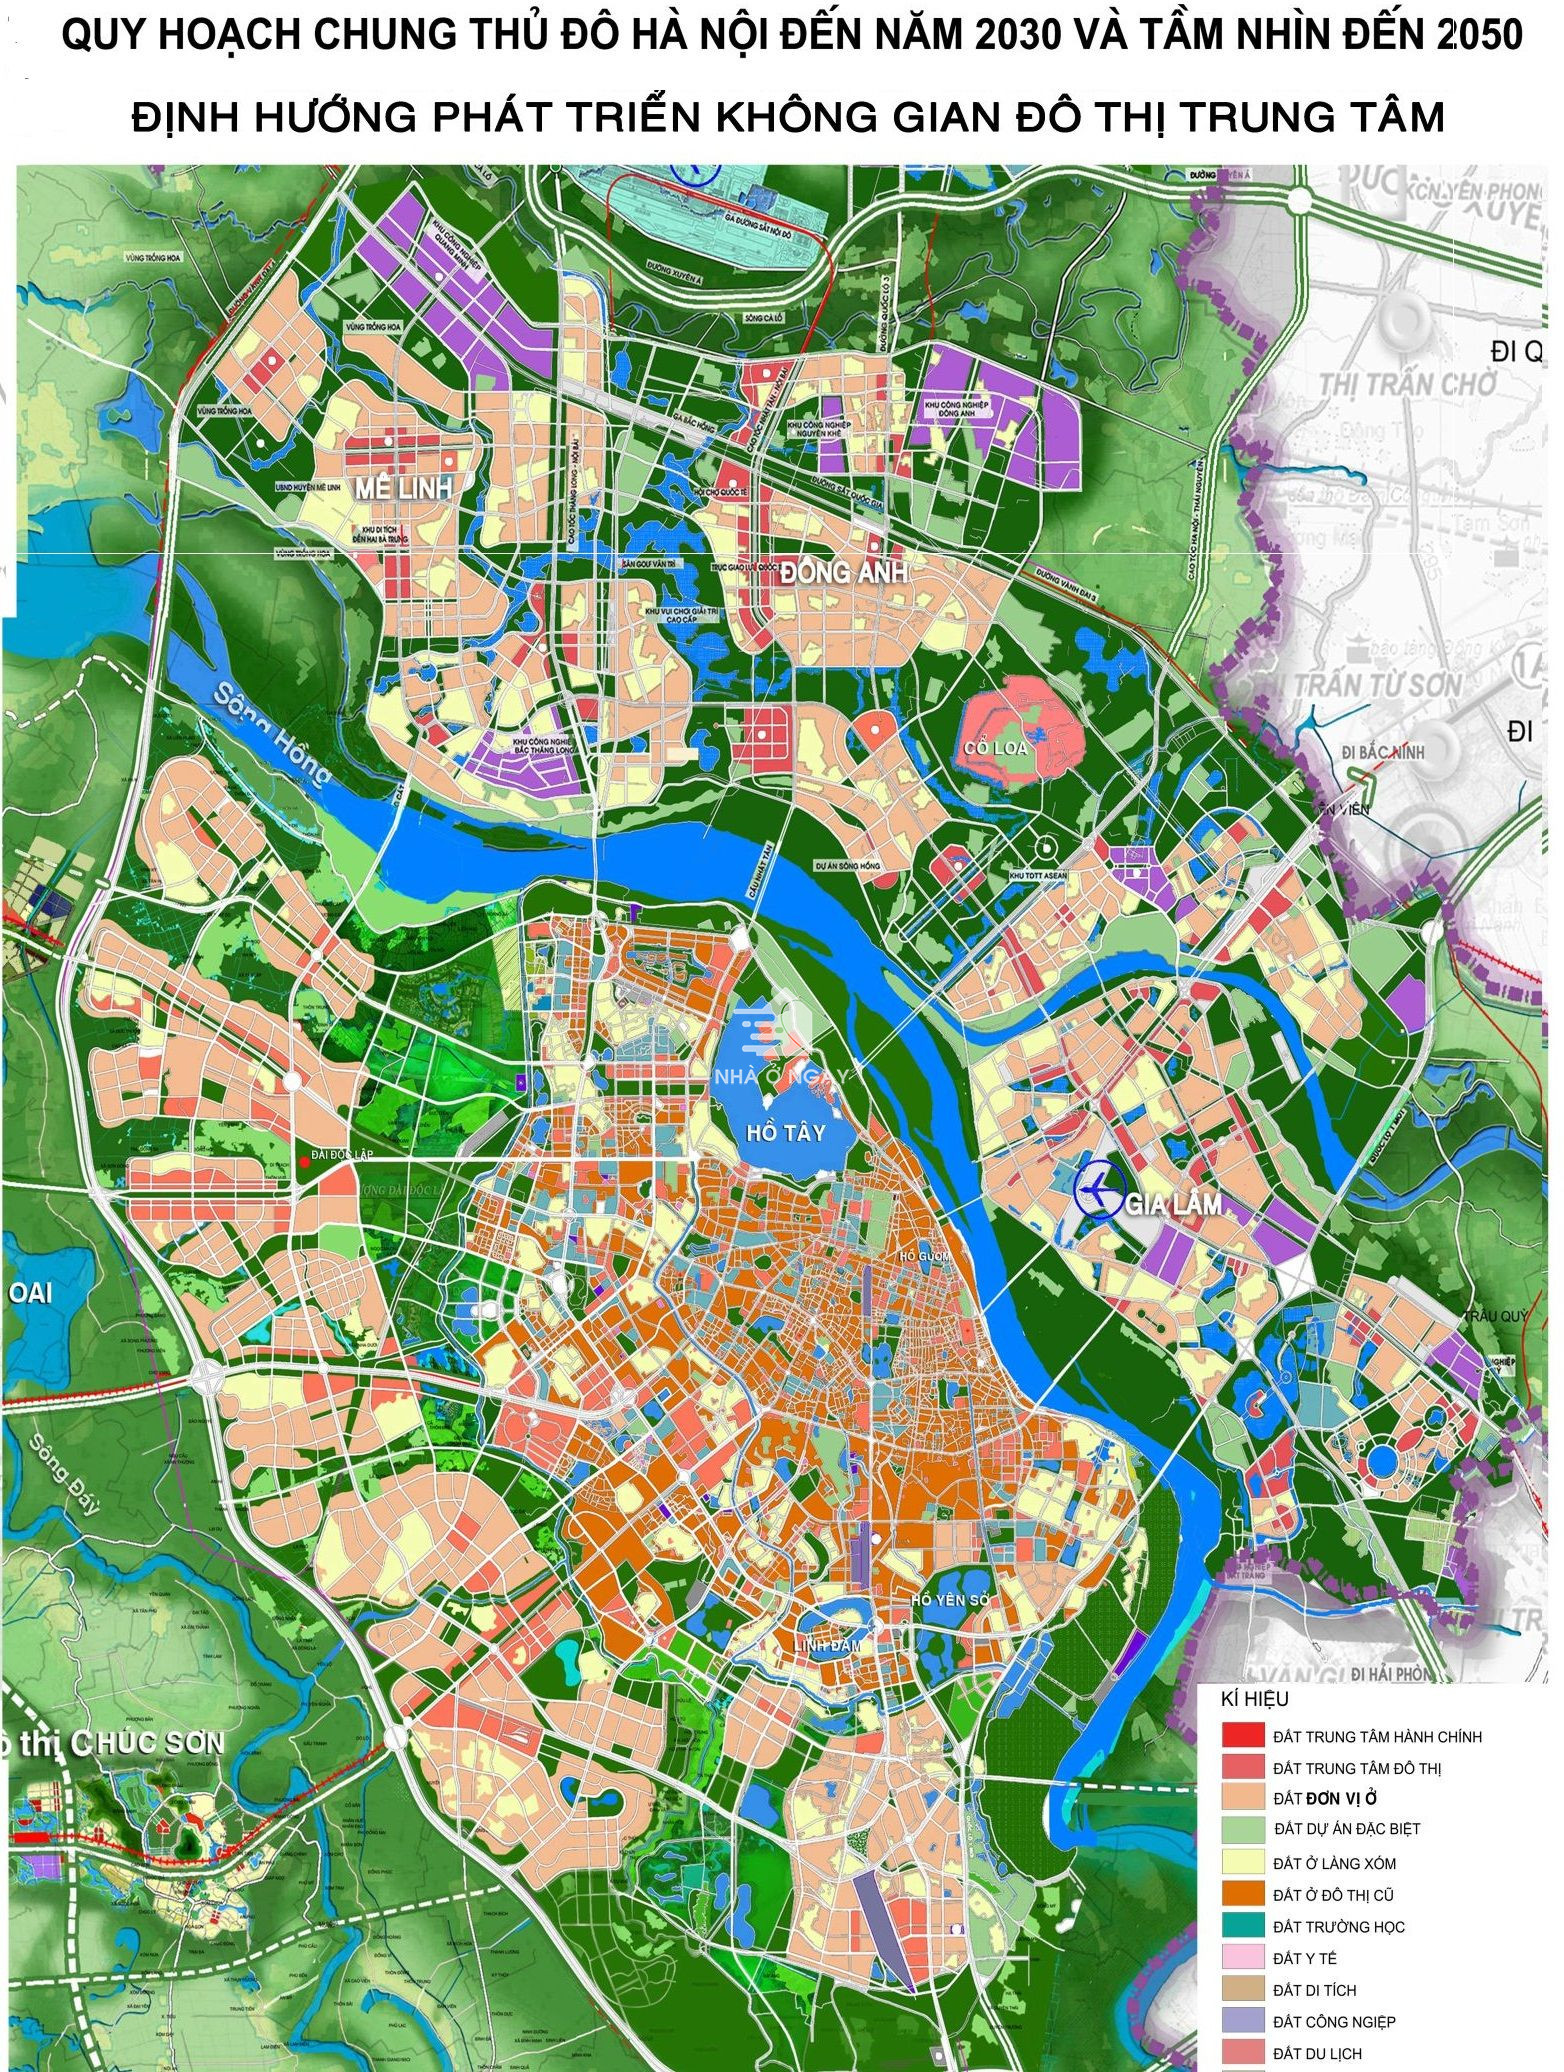 Bản đồ quy hoạch thành phố Hà Nội đến năm 2030